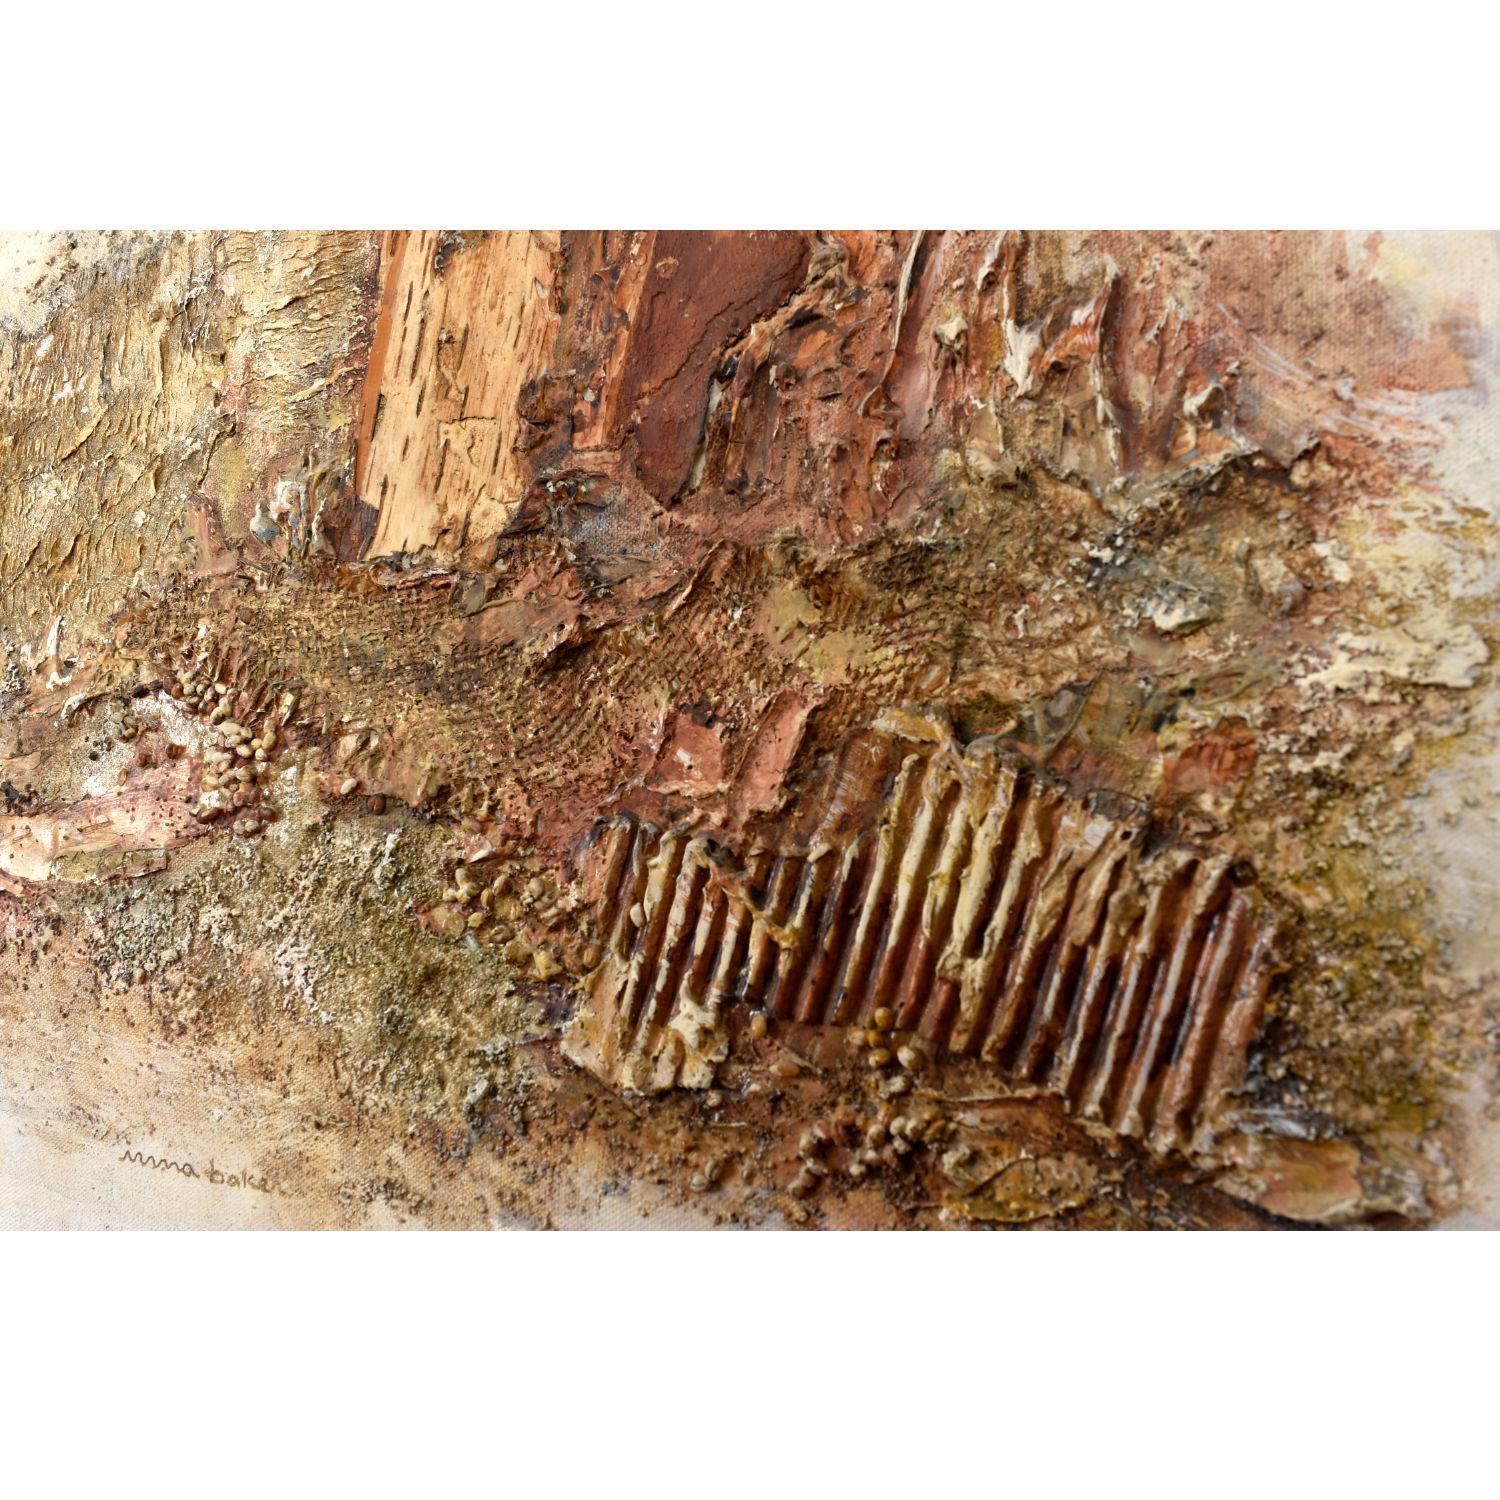 Fin du 20e siècle Irma Baker - Peinture technique mixte en terre cuite avec toile de jute et liège